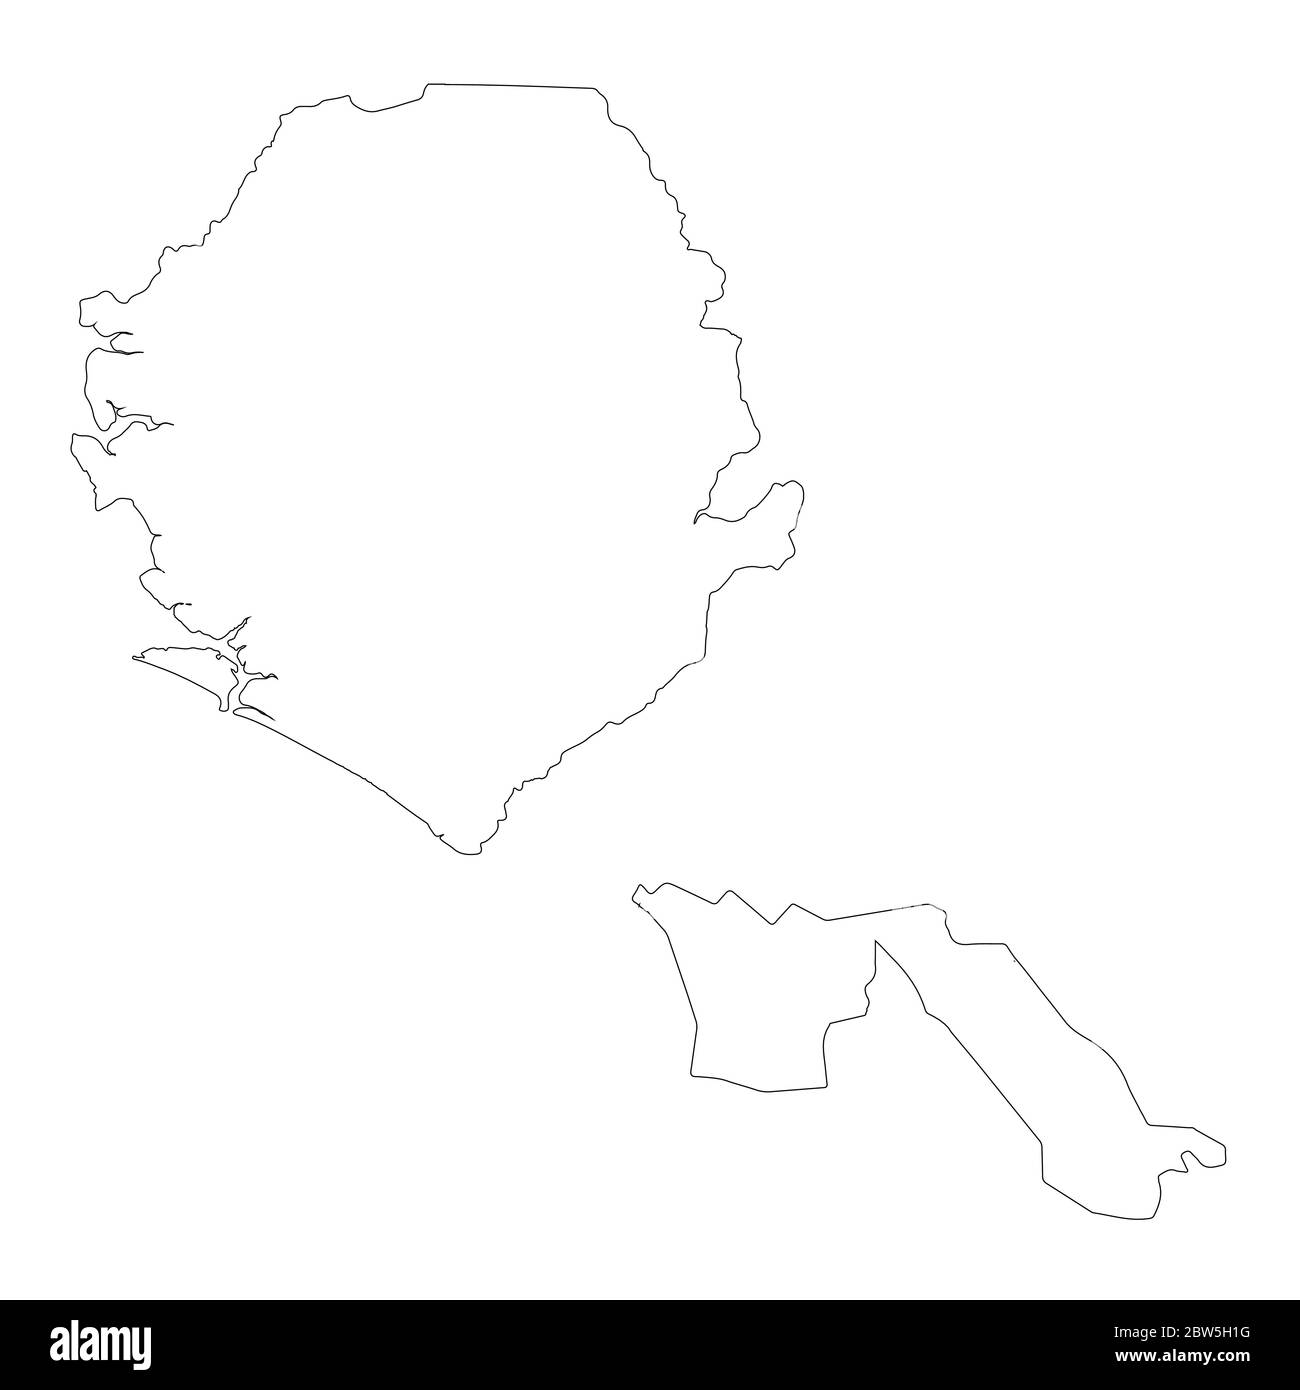 Vektorkarte Sierra Leone und Freetown. Land und Hauptstadt. Isolierte Vektorgrafik. Übersicht. EPS 10-Abbildung. Stock Vektor